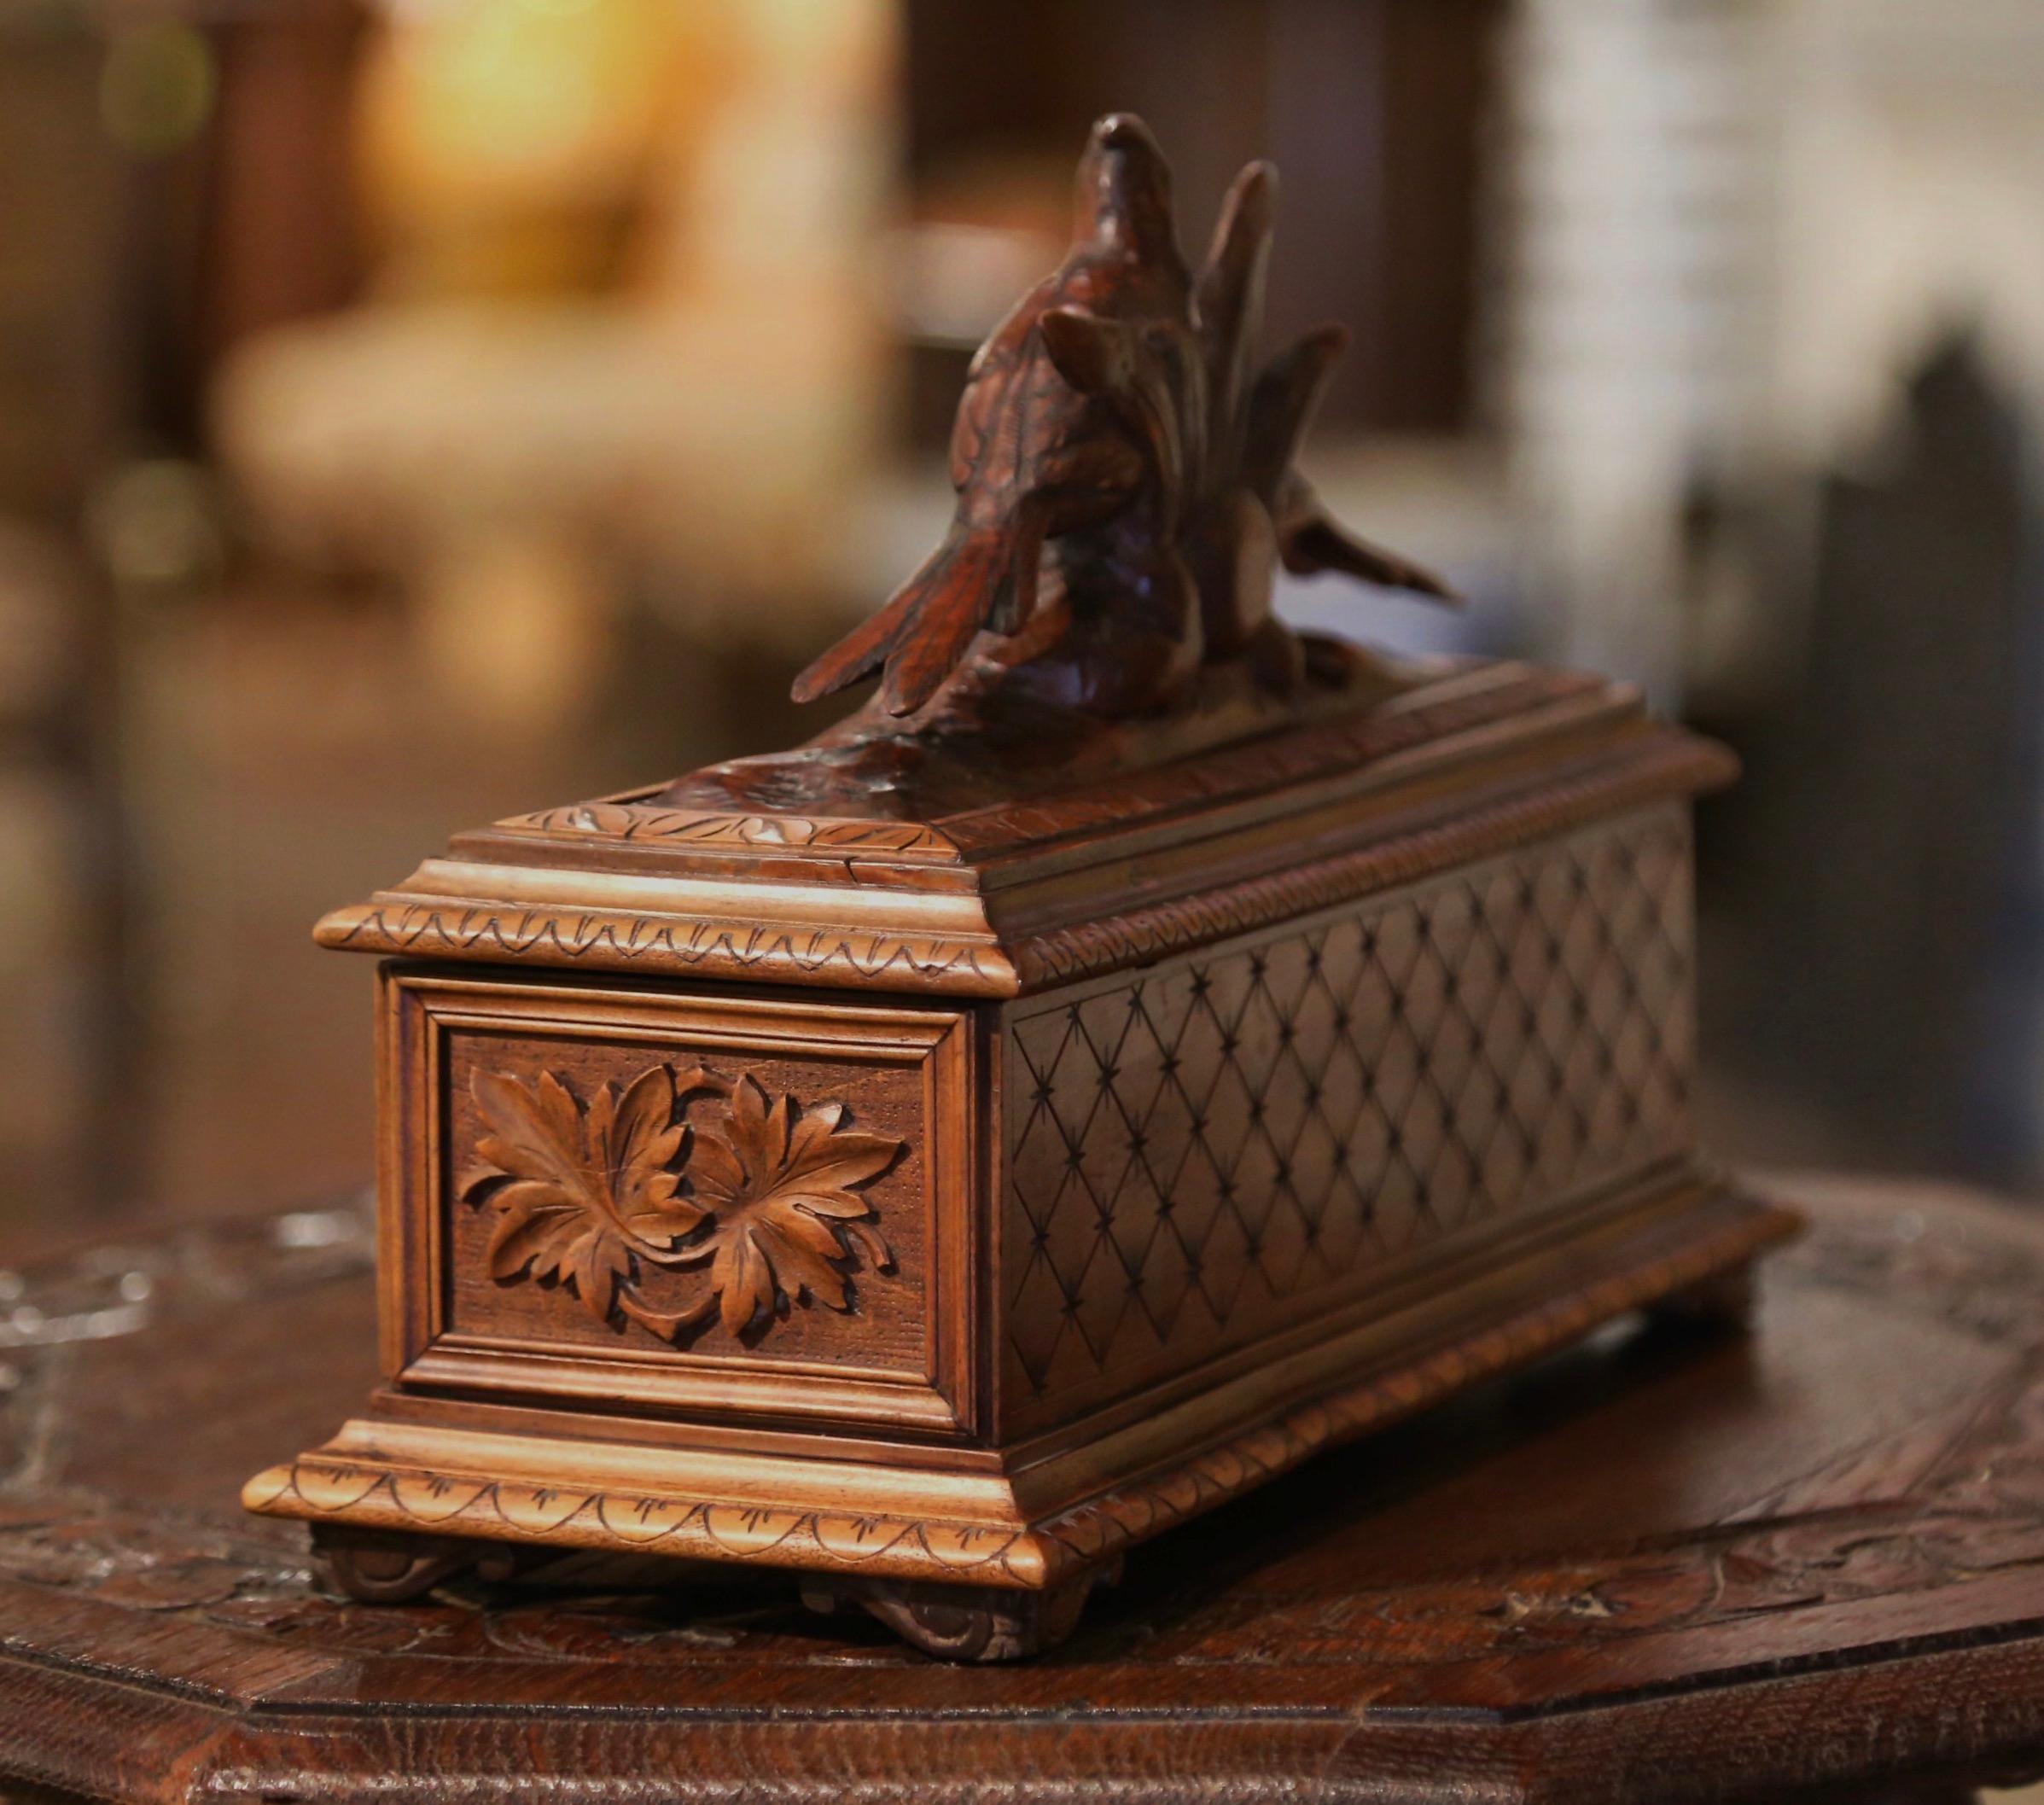 19th Century French Black Forest Carved Walnut Jewelry Box with Bird Motifs 2